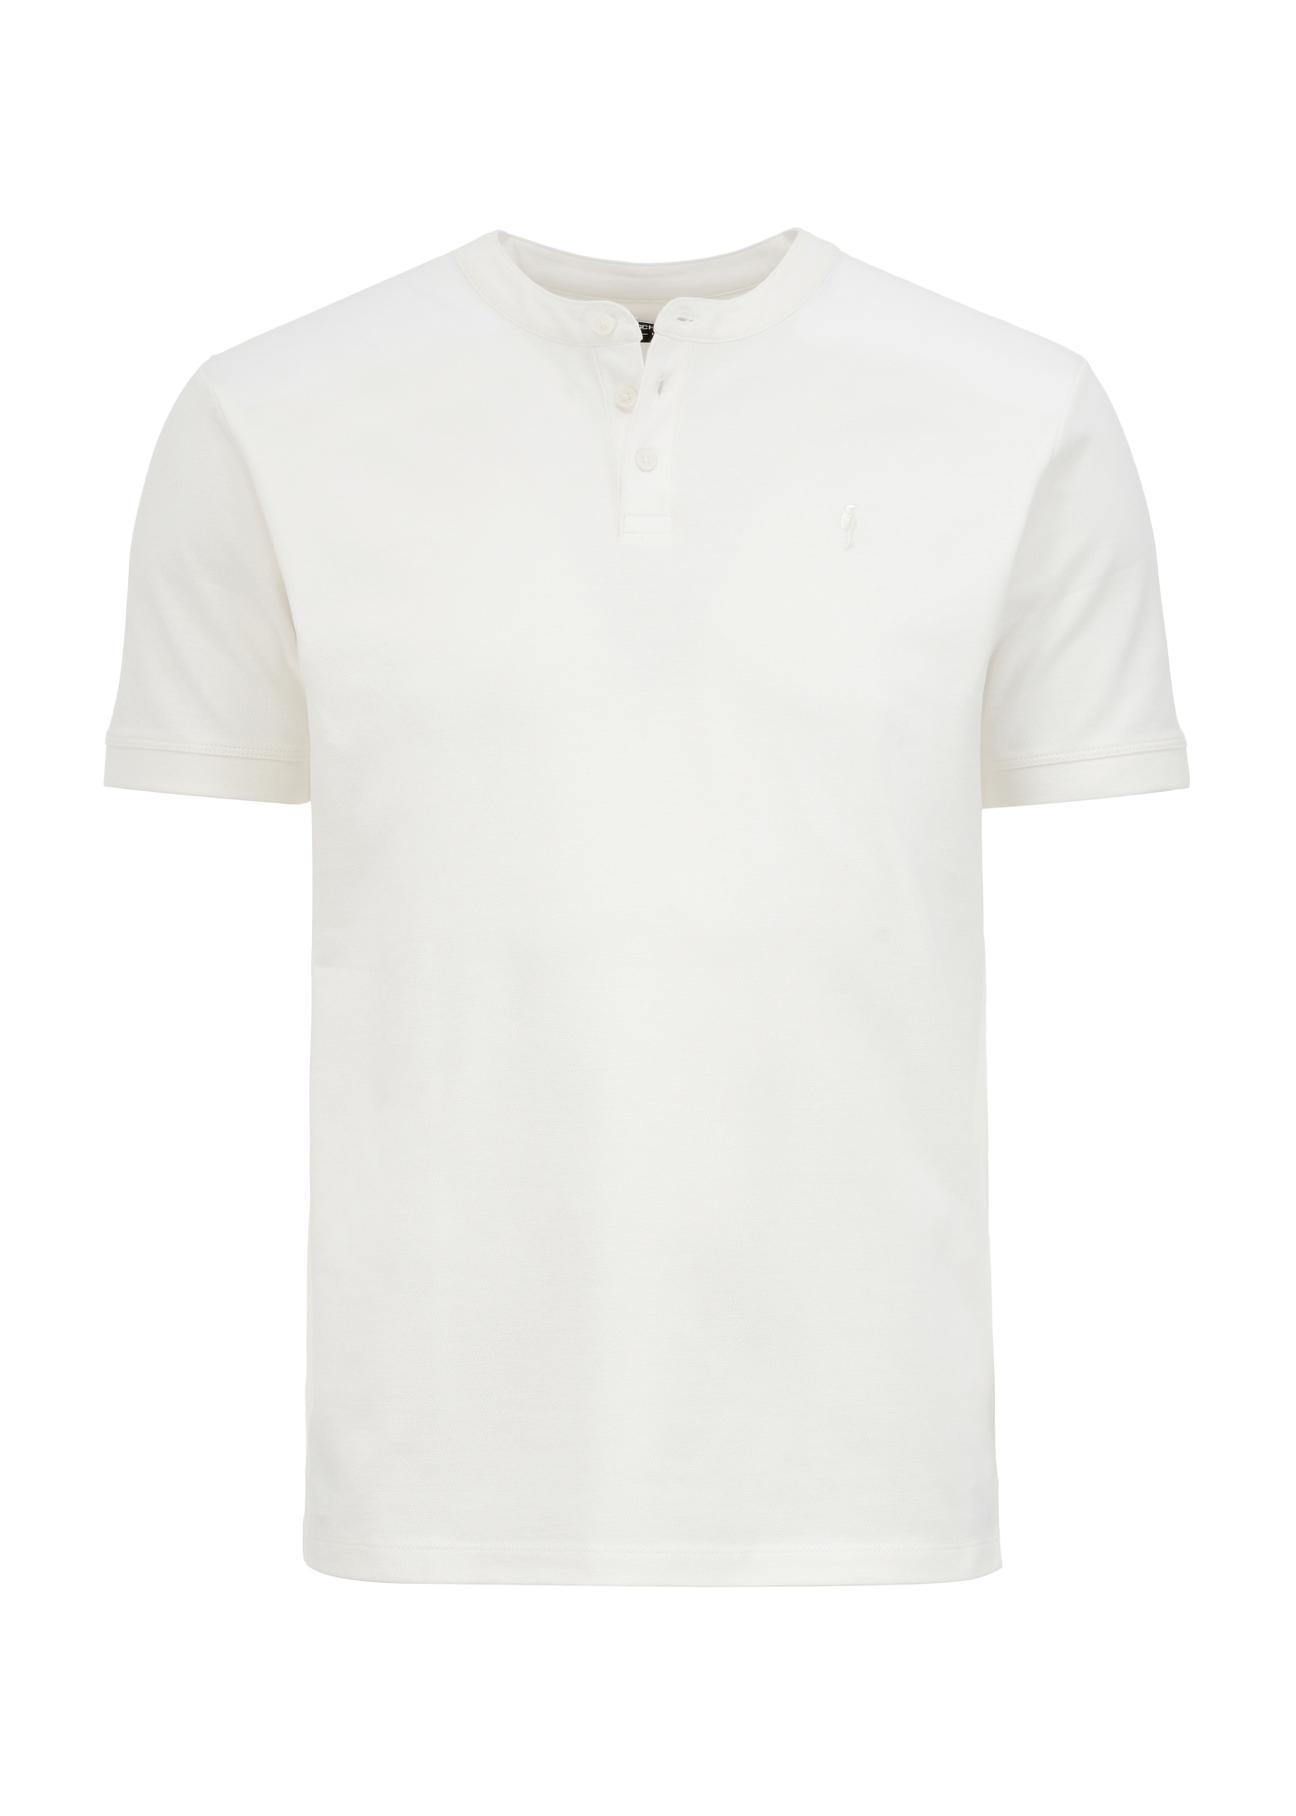 Biała koszulka polo ze stójką POLMT-0061-11(W24)